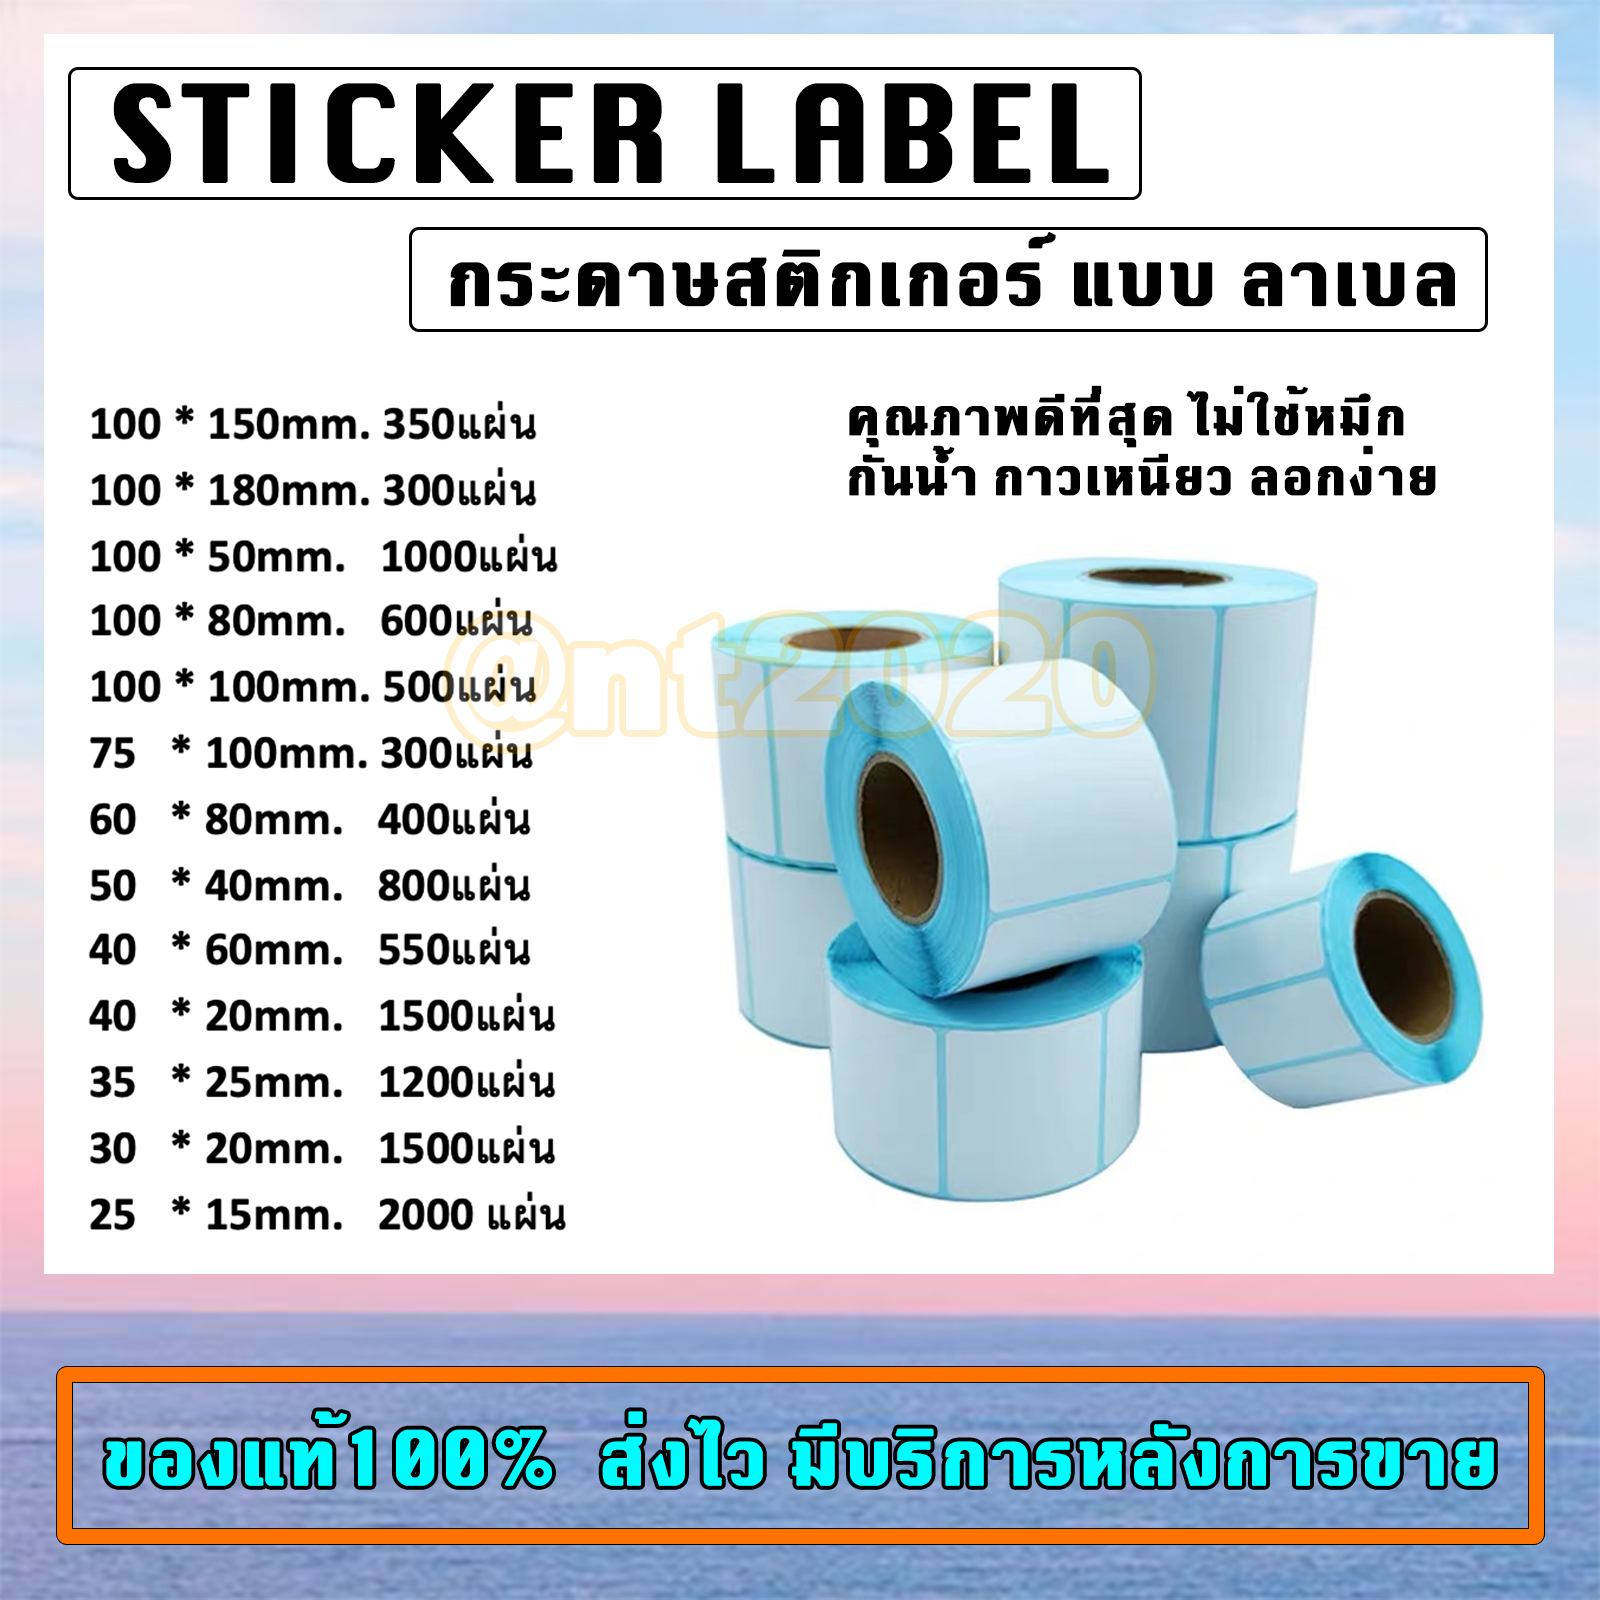 sticker label กระดาษสติกเกอร์ความร้อน แบบลาเบล